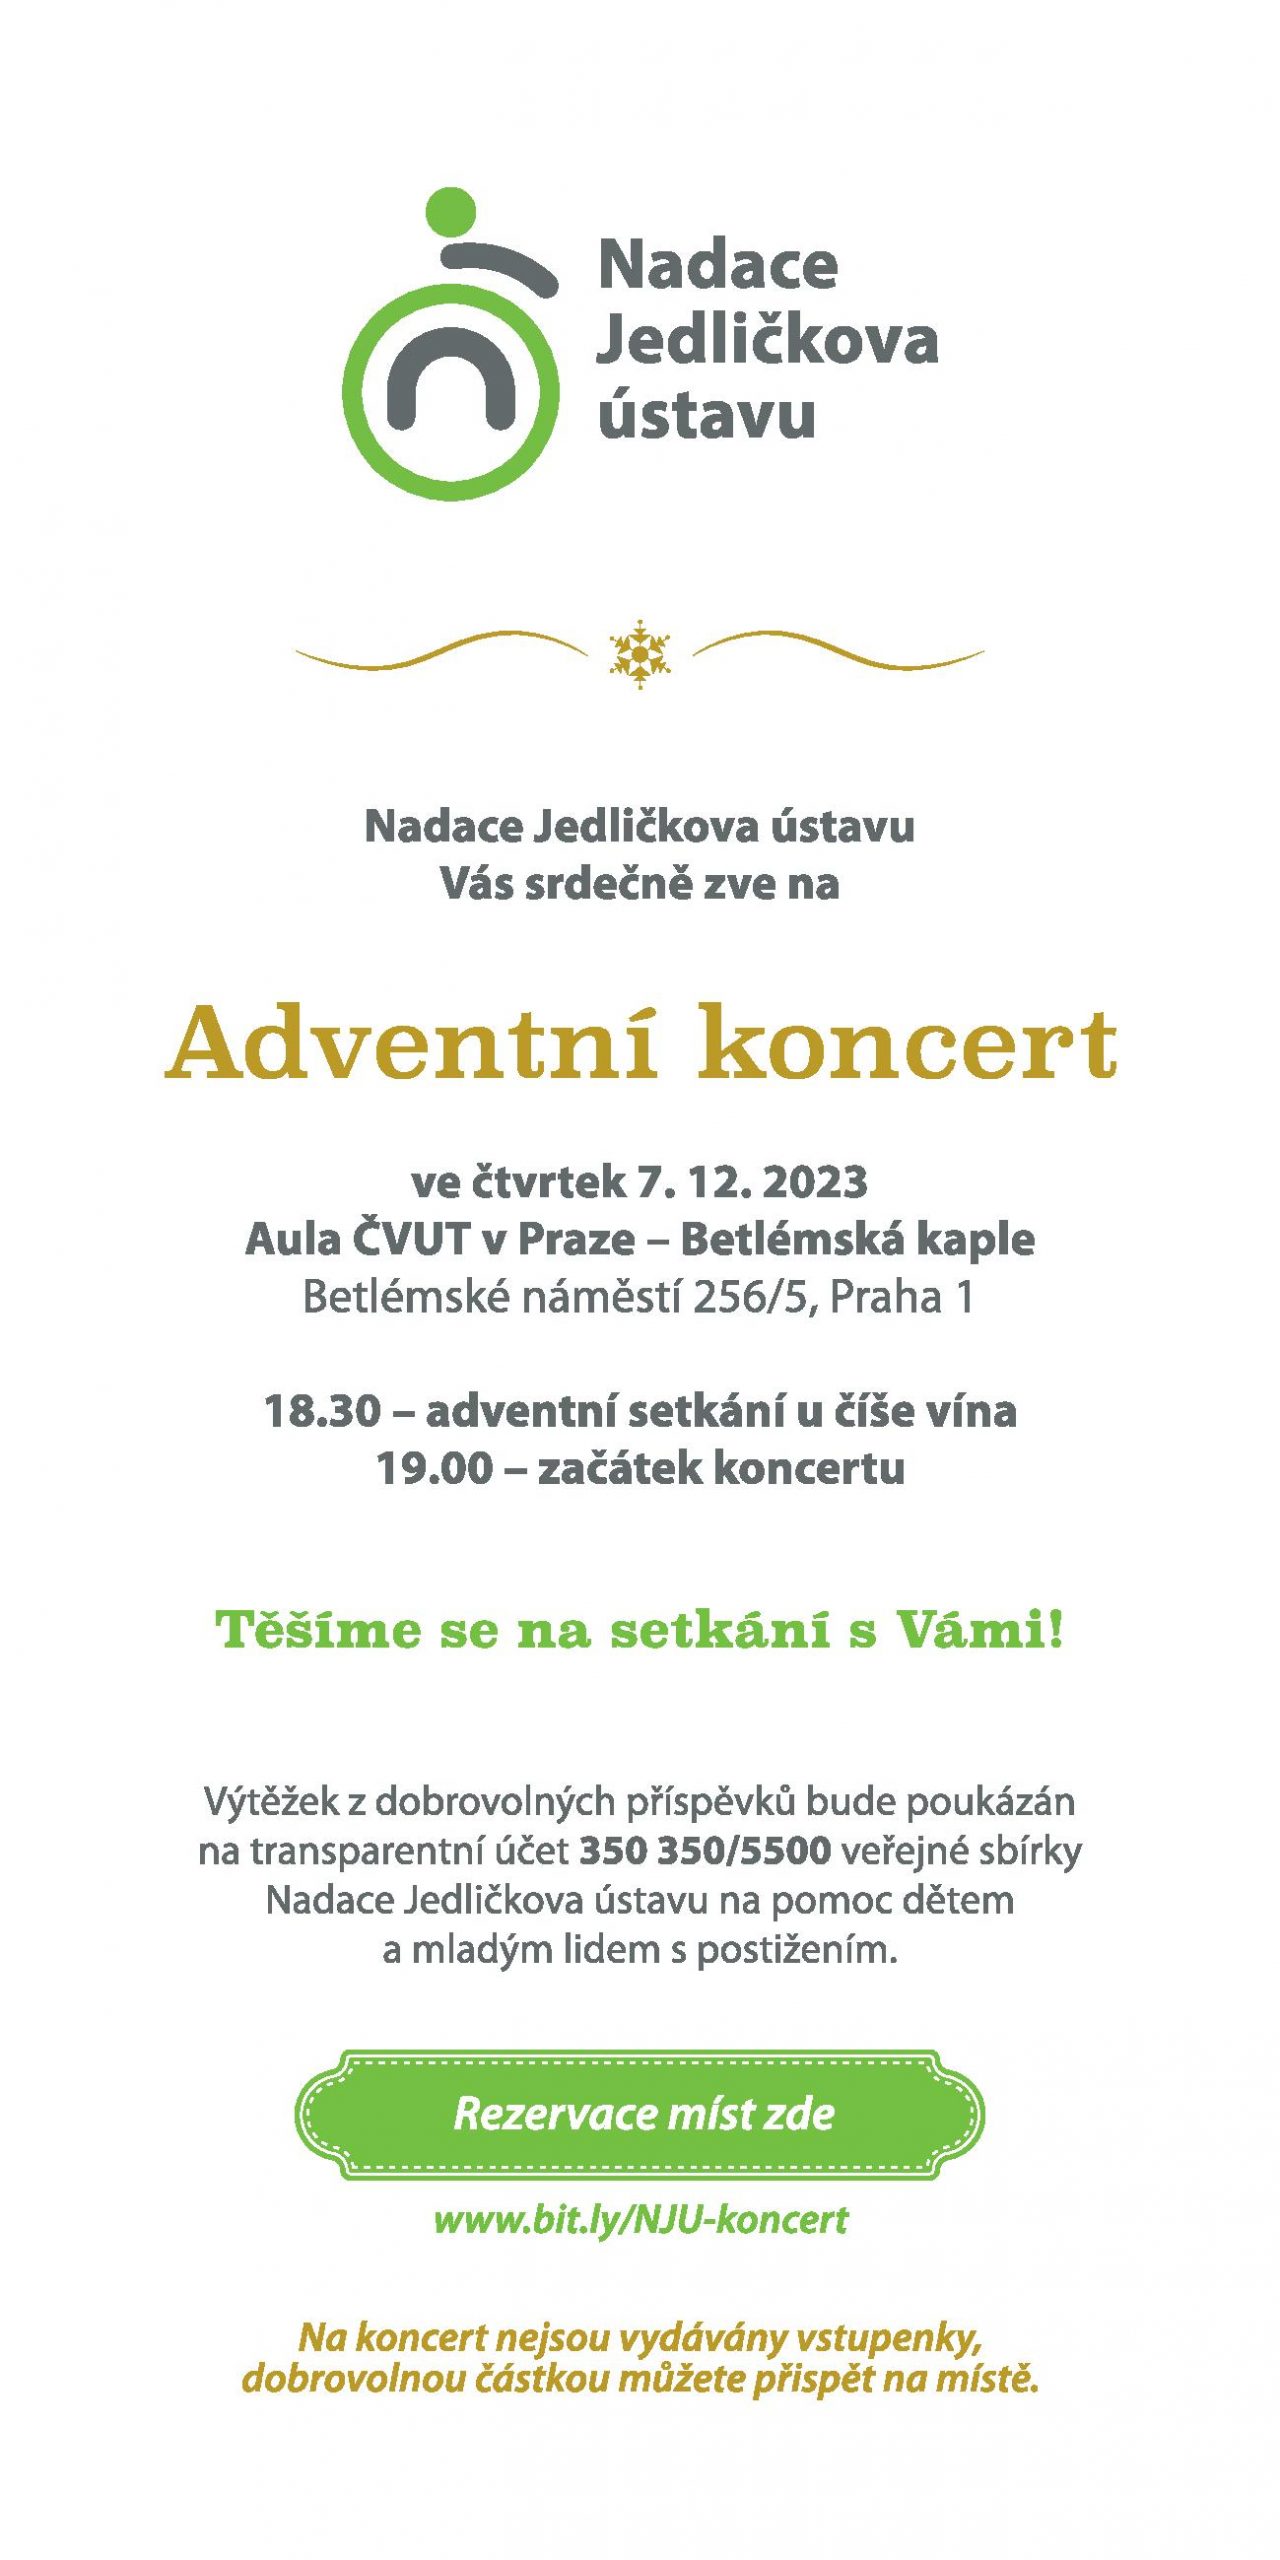 Adventní koncert Jedličkova ústavu